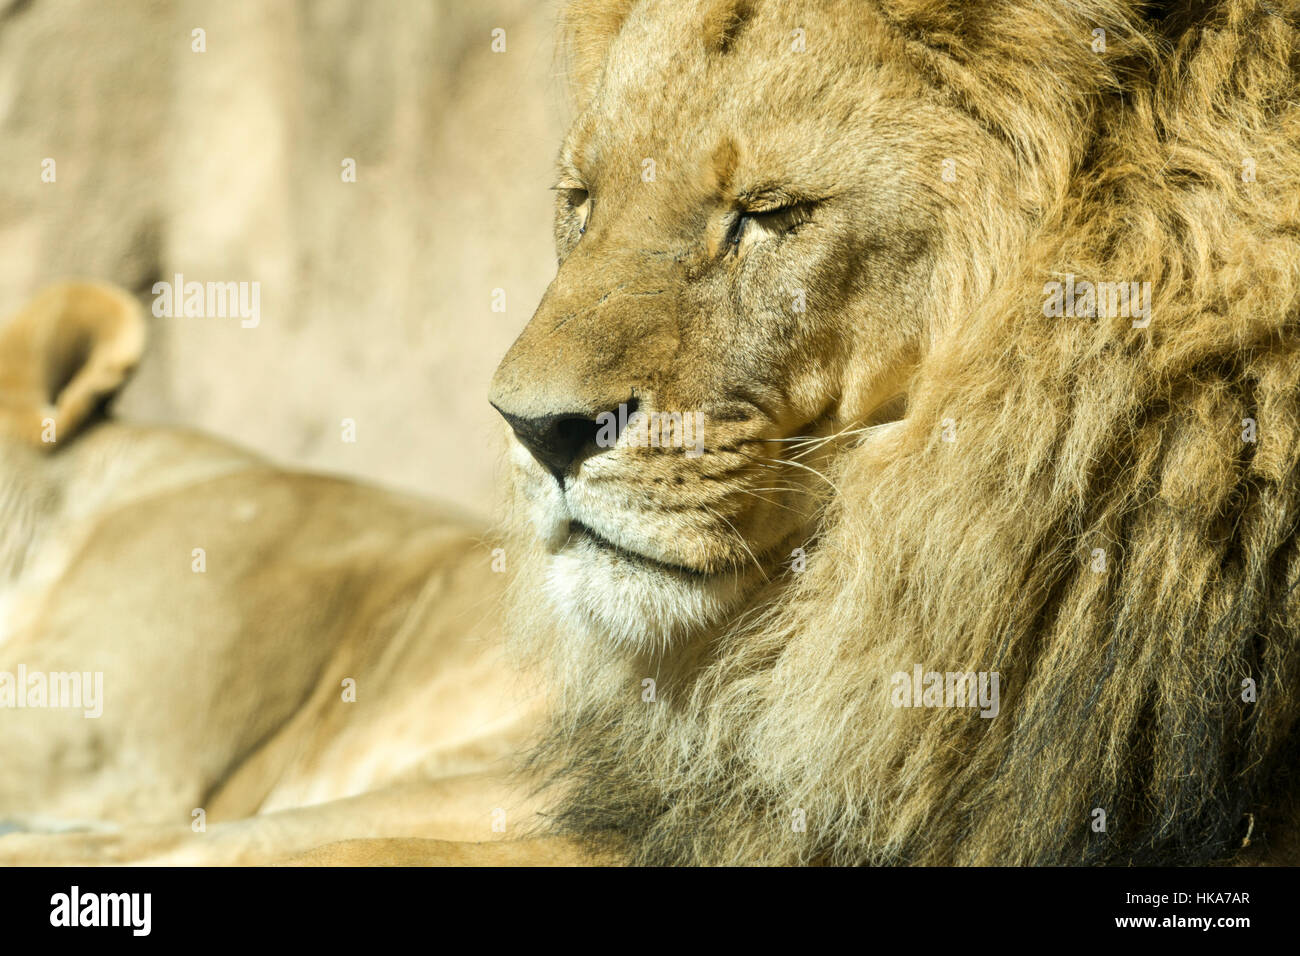 Un portrait de l'homme african lion (Panthera leo), allongé sur le sol Banque D'Images